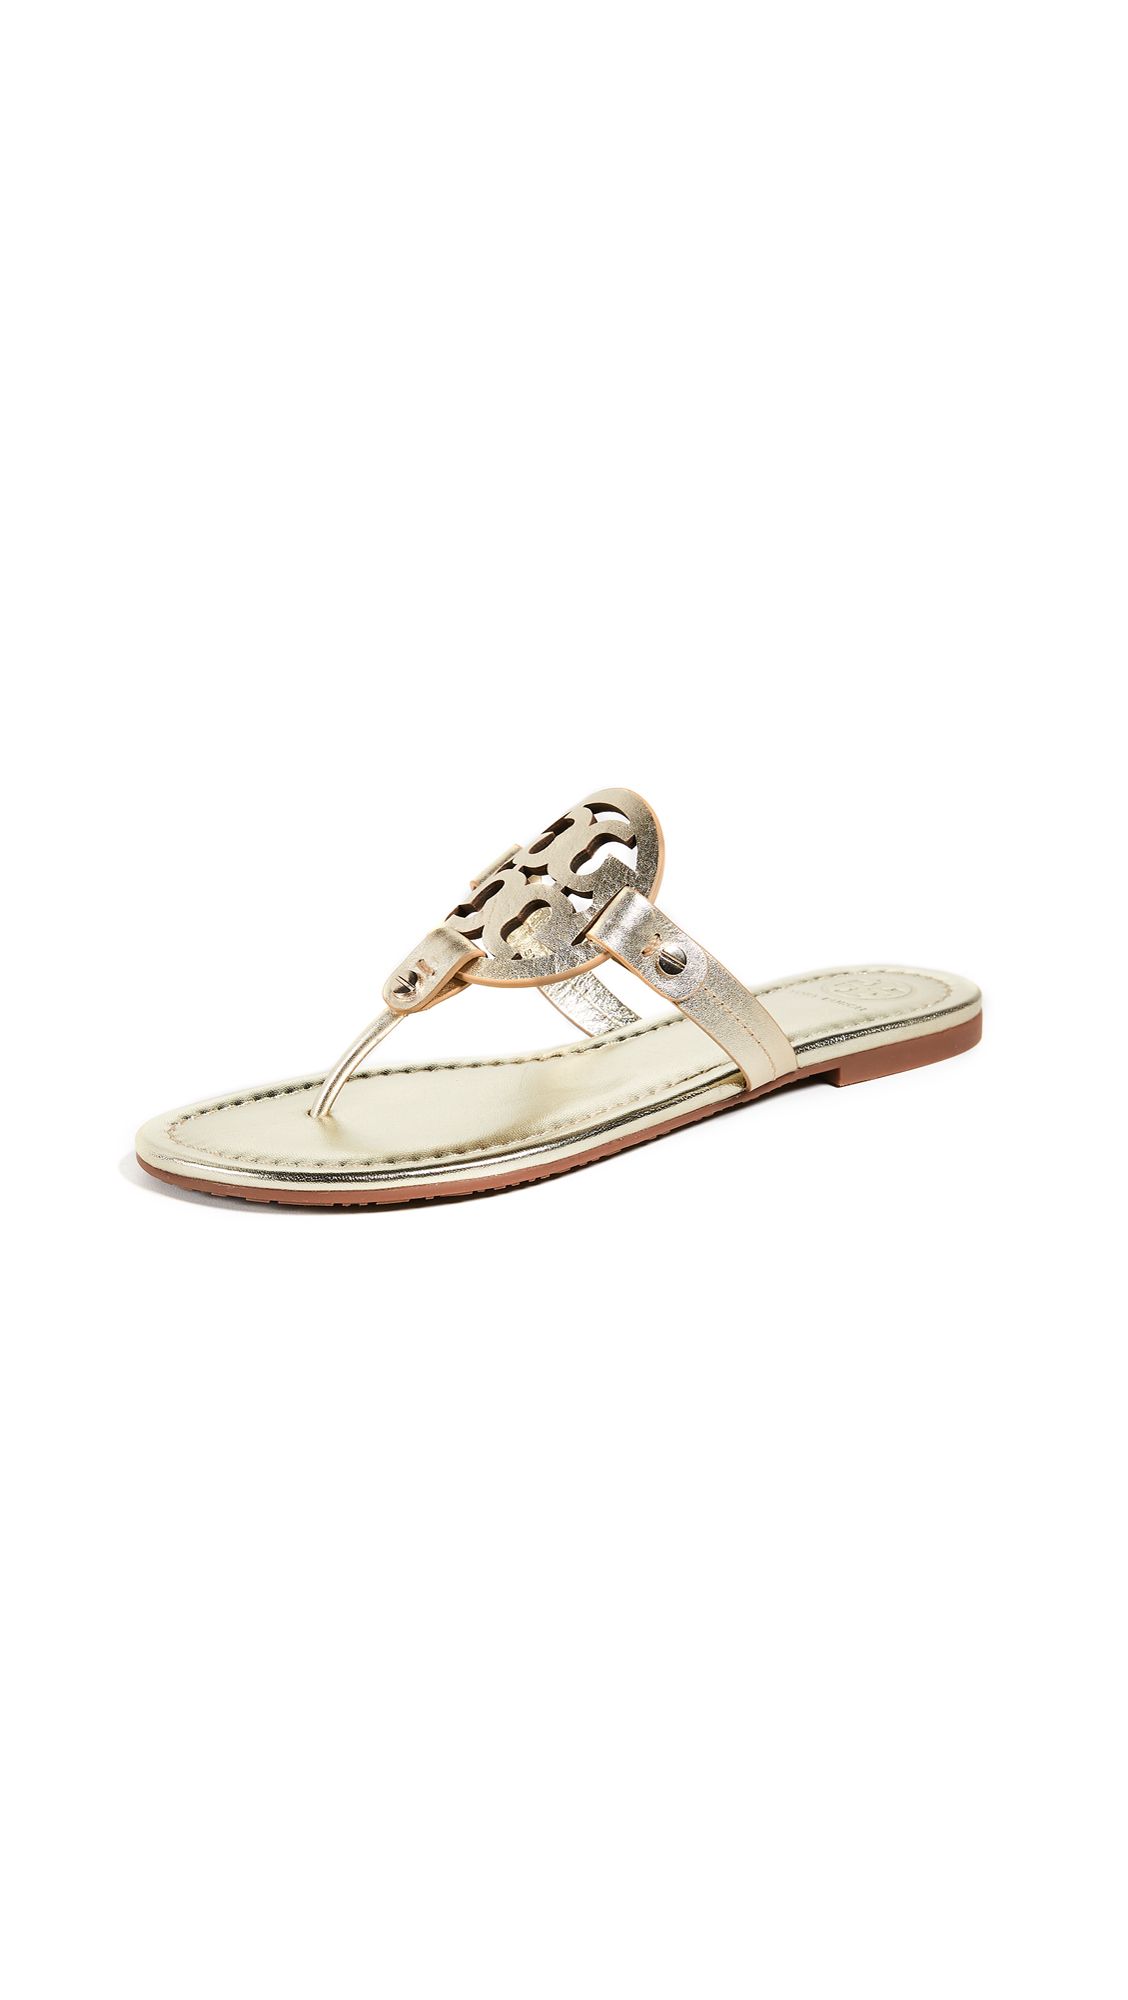 Tory Burch Miller Thong Sandals | Shopbop